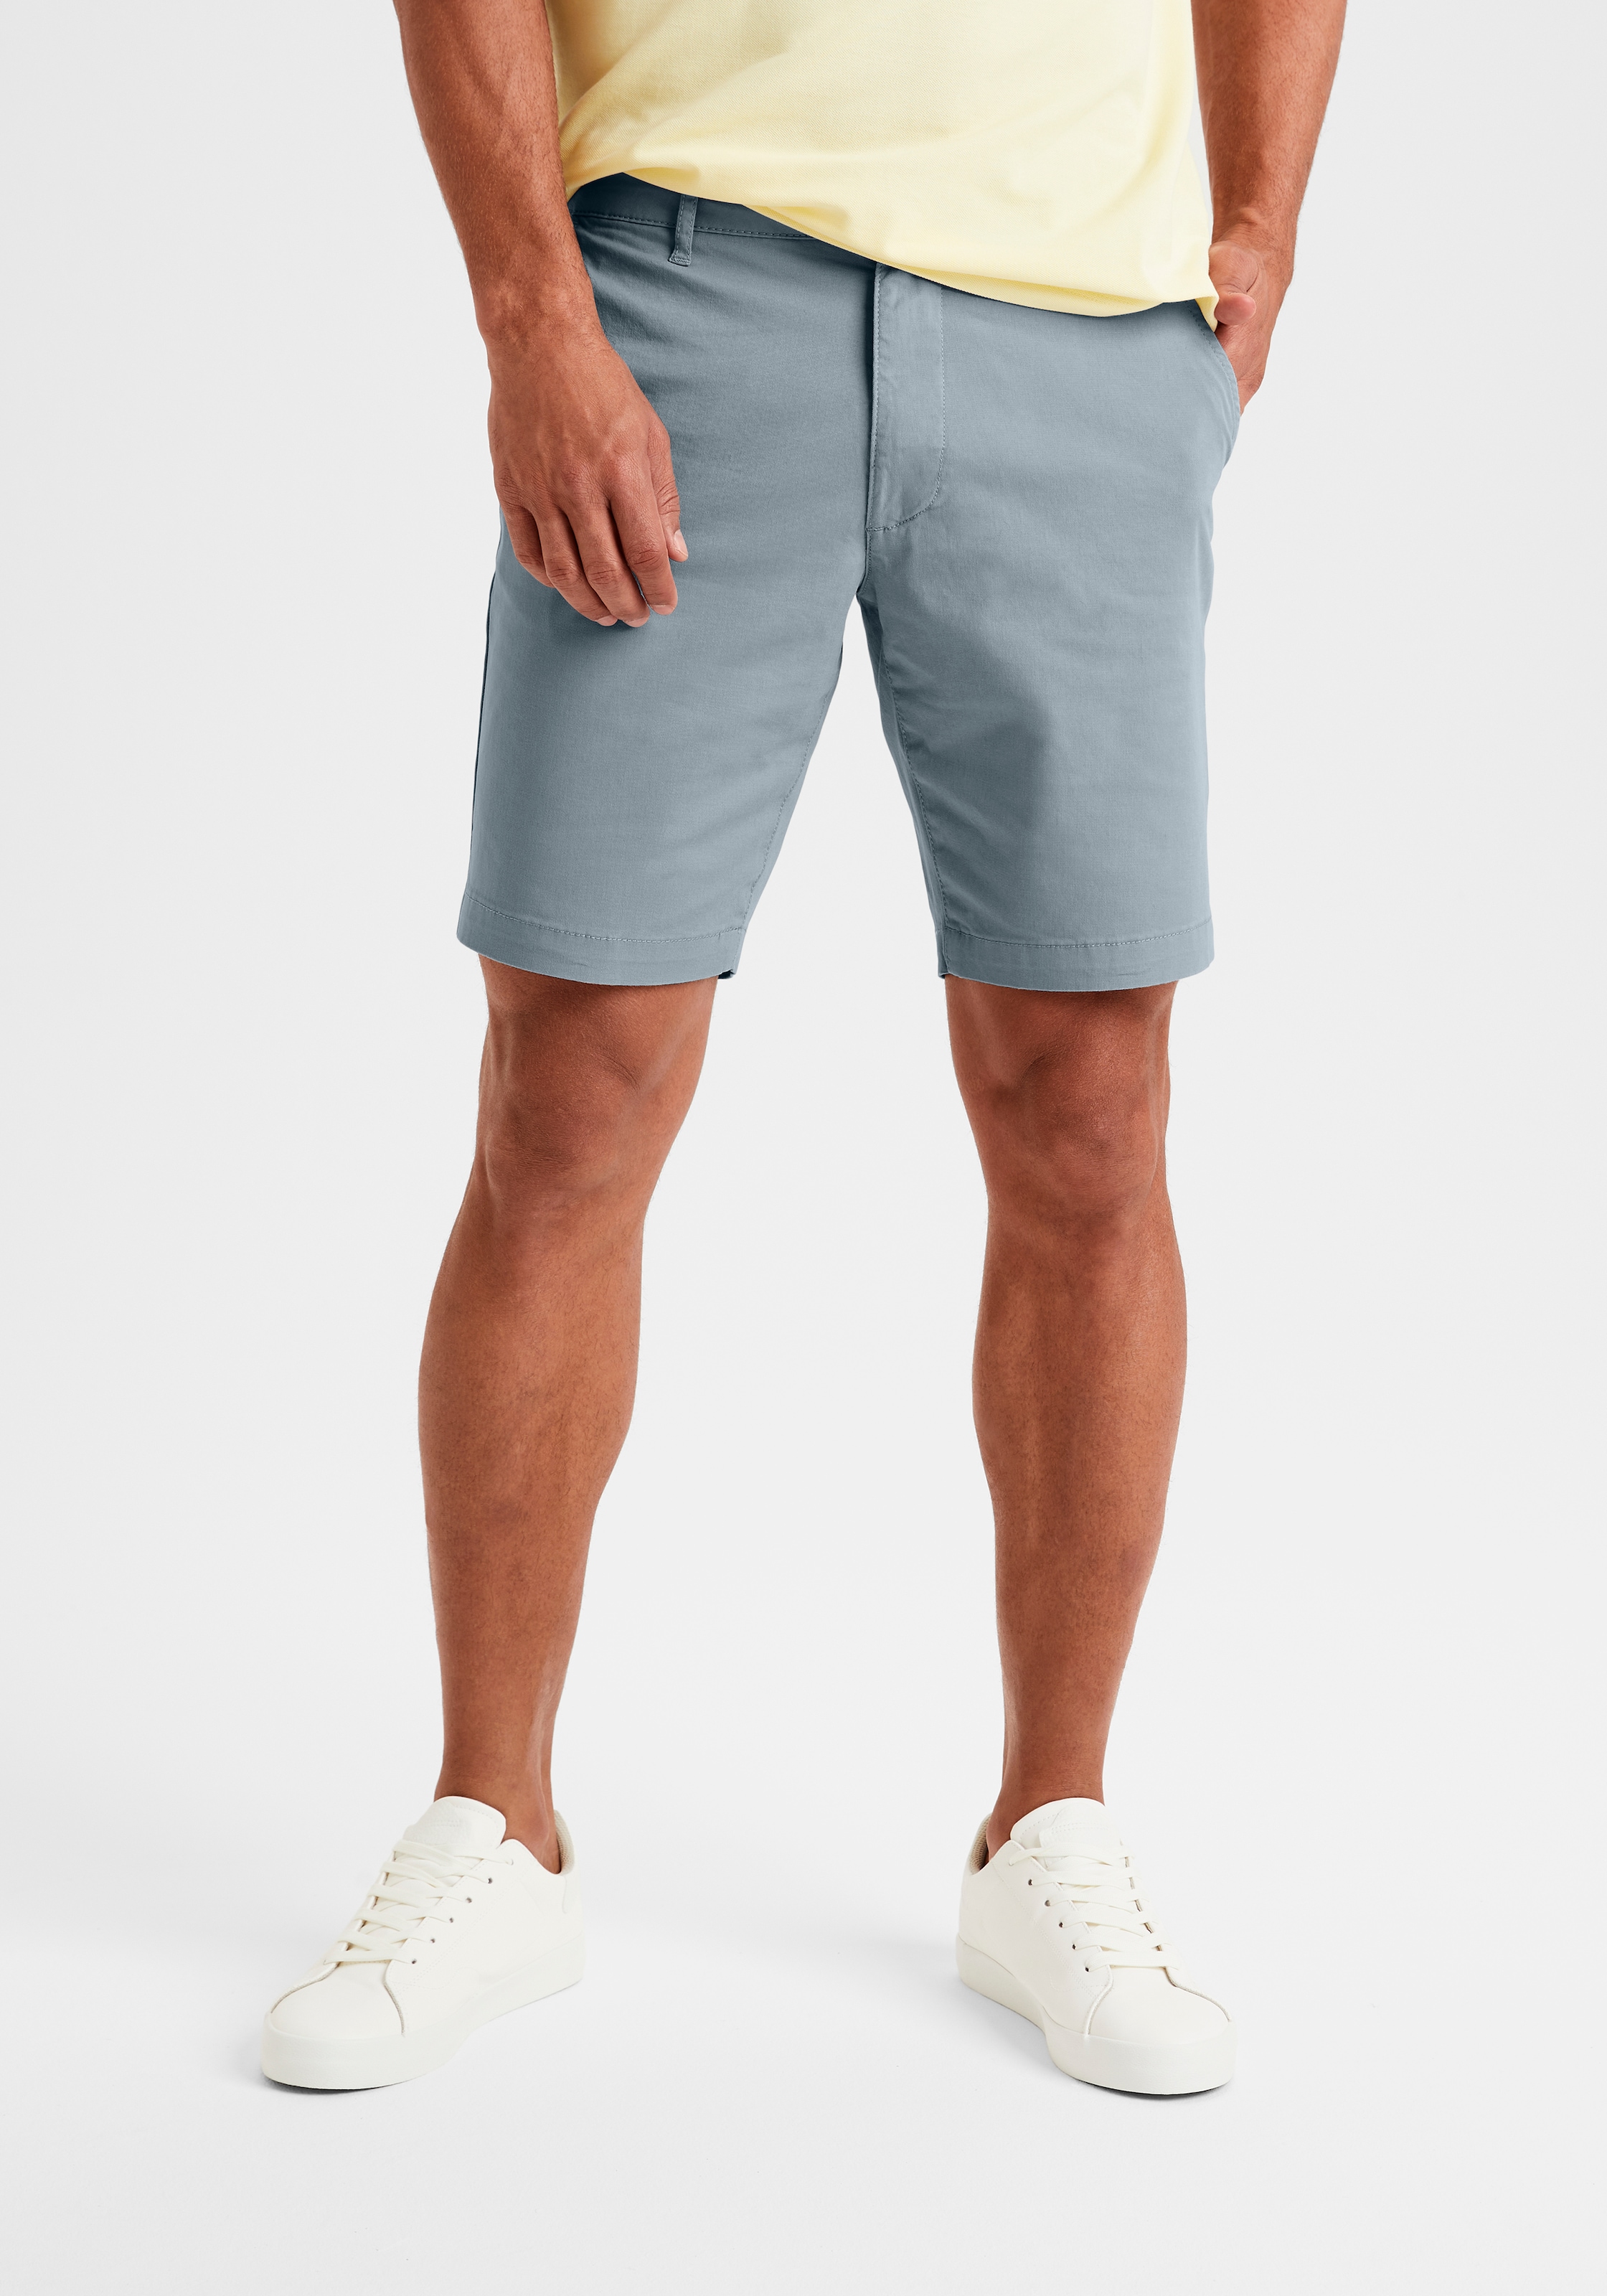 Chinoshorts, Shorts mit normaler Leibhöhe aus elastischer Baumwoll-Qualität